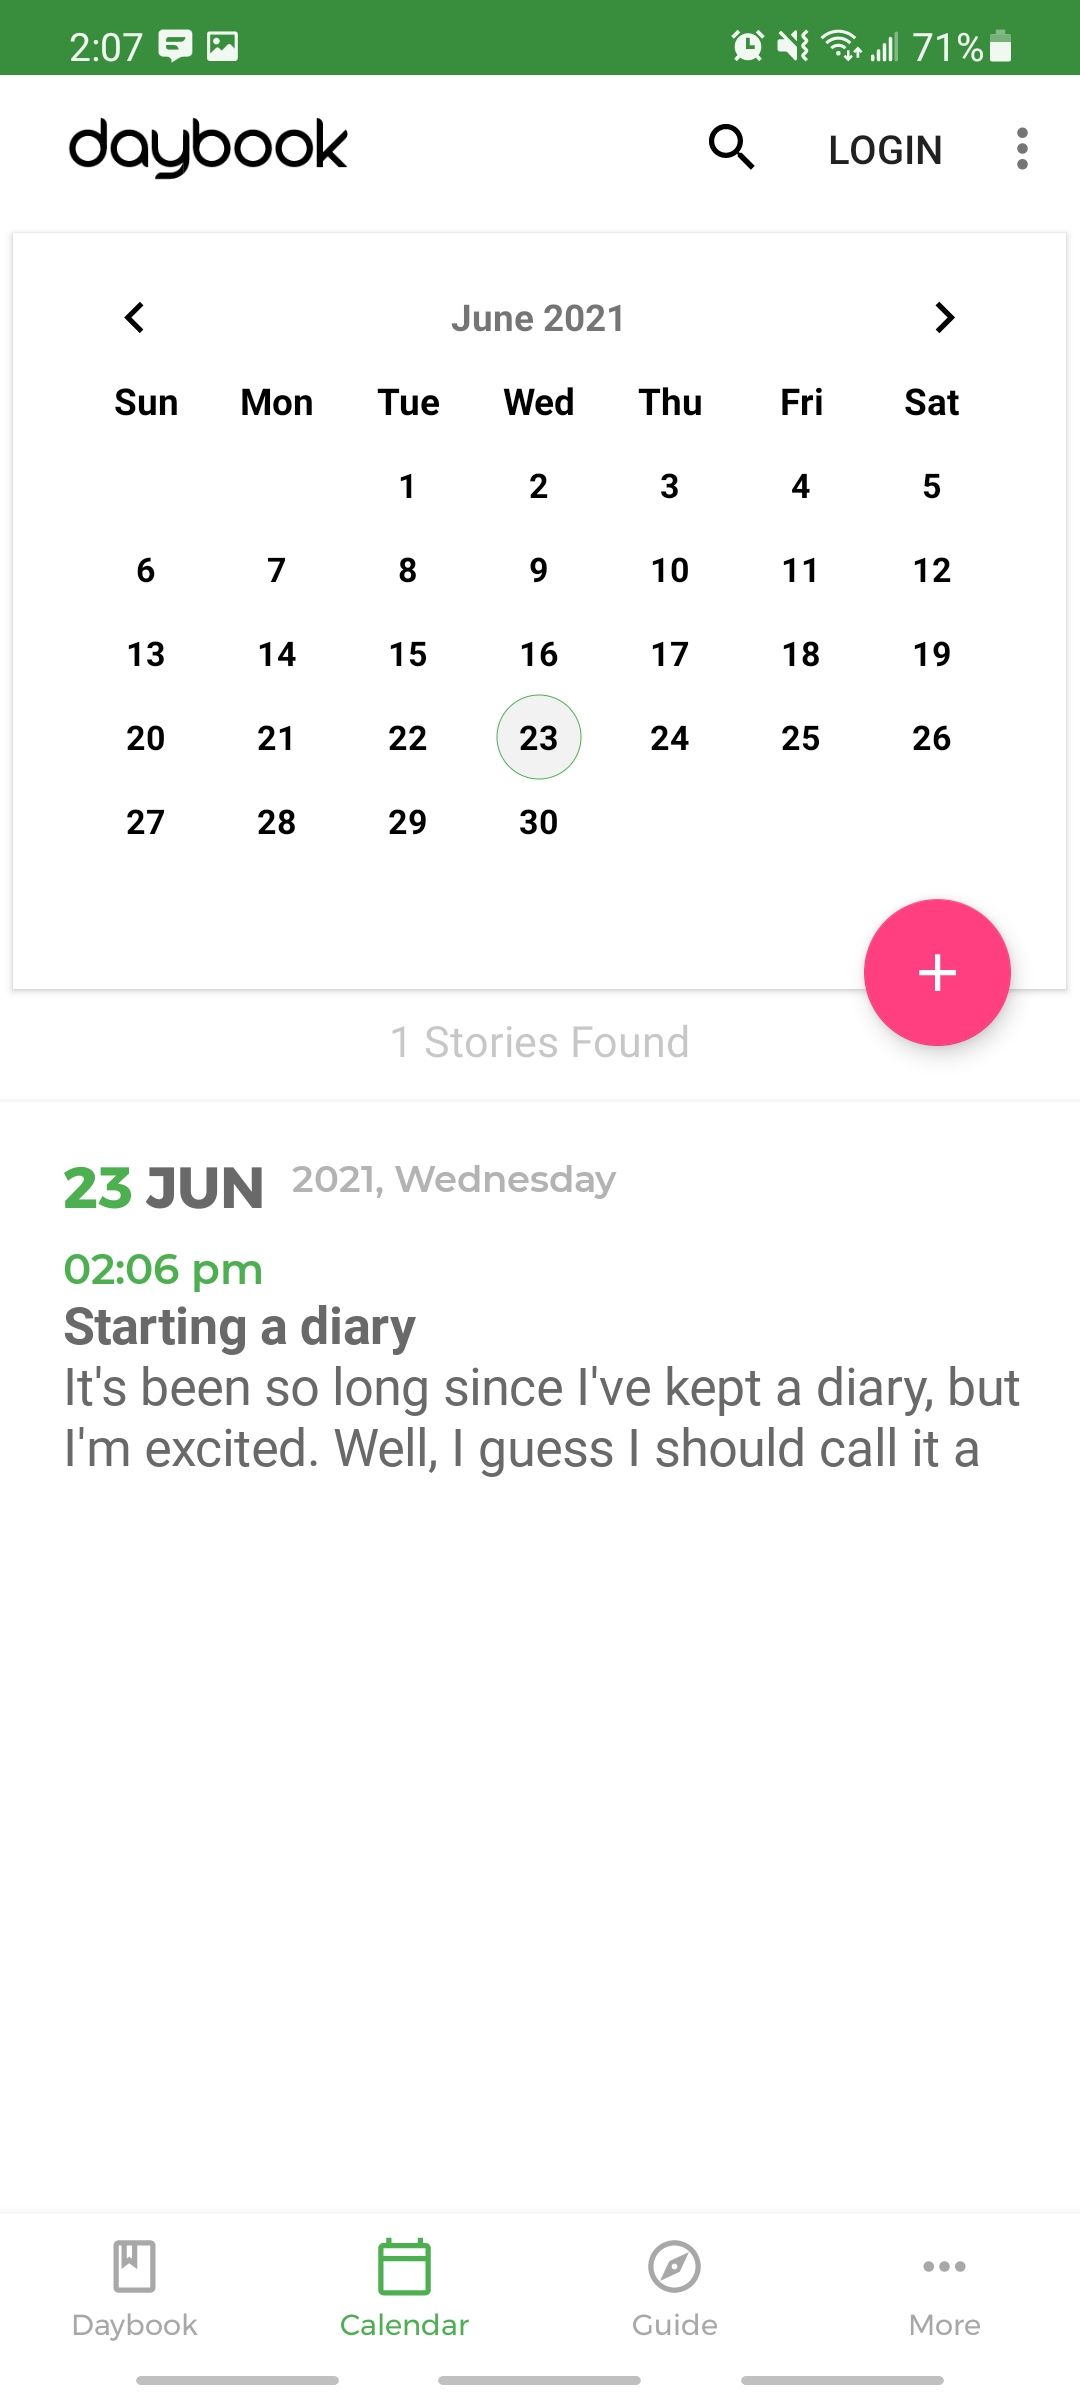 daybook app calendar view